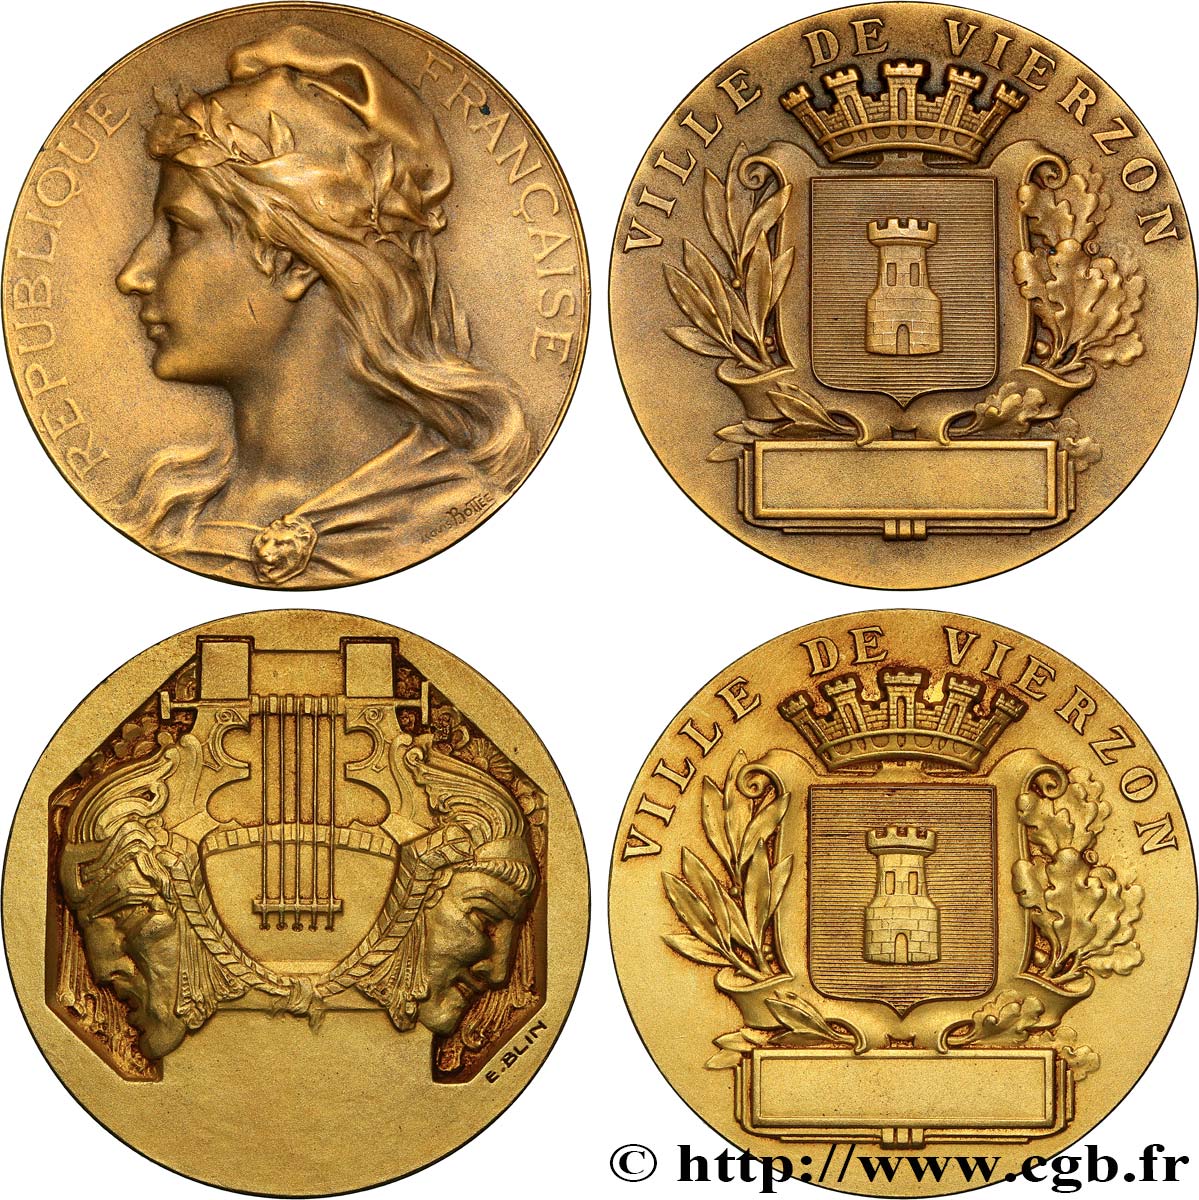 III REPUBLIC Médaille de récompense, Ville de Vierzon, lot de 2 ex. AU